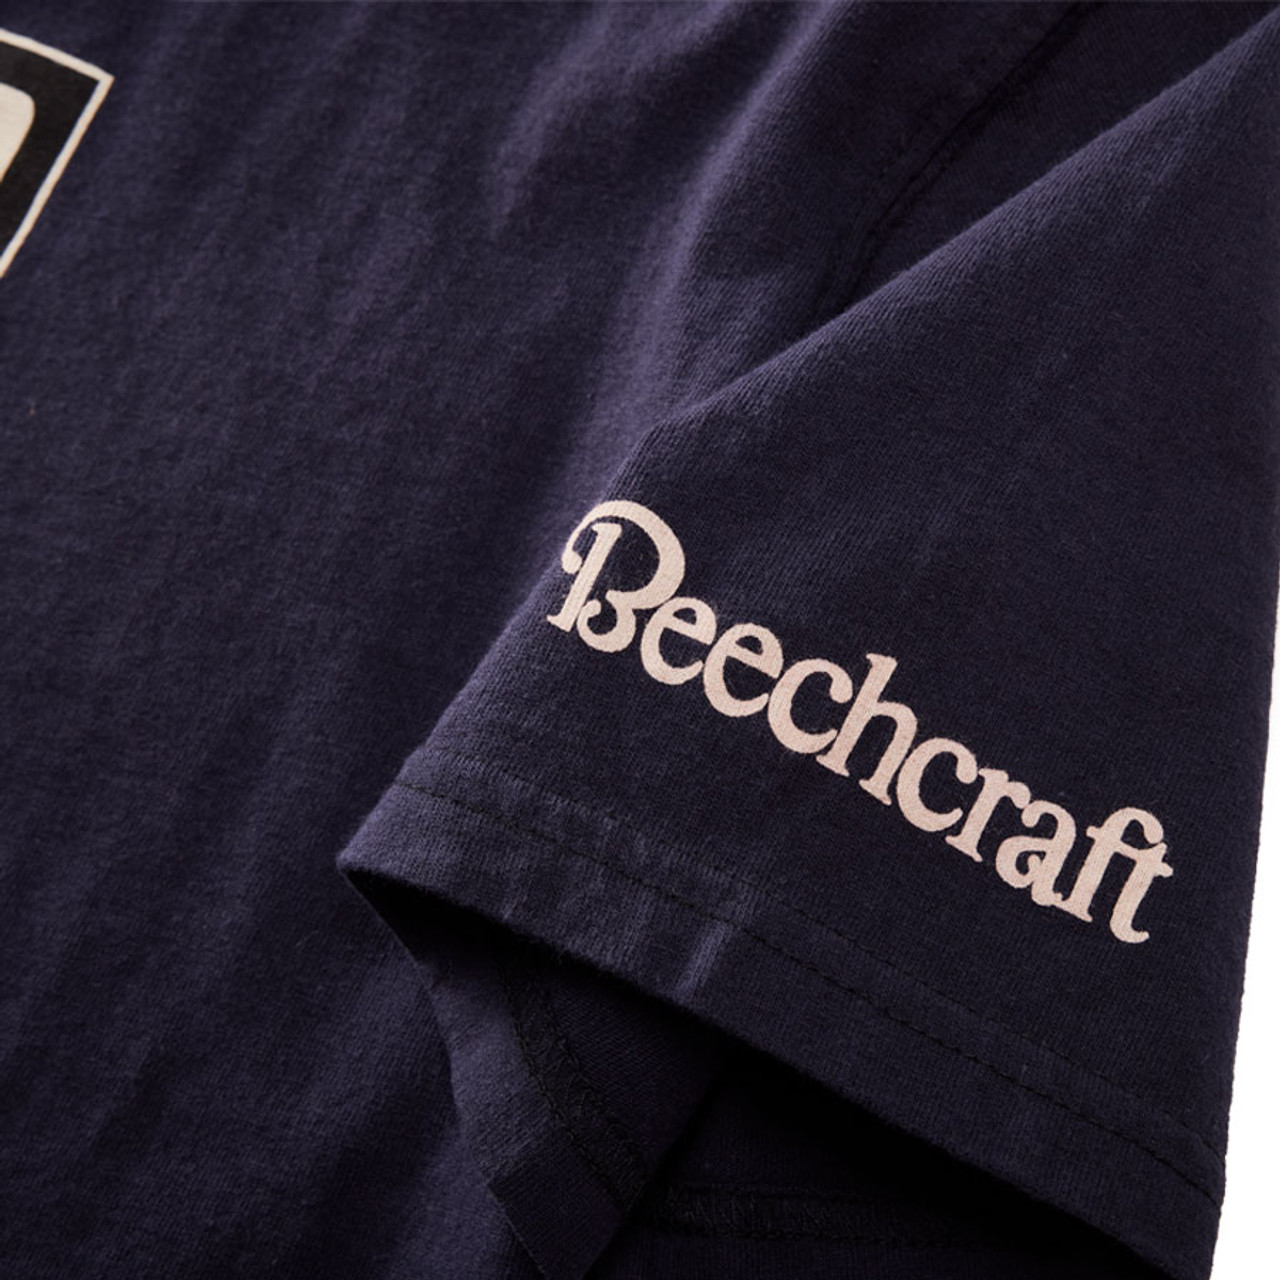 Beechcraft T-Shirt